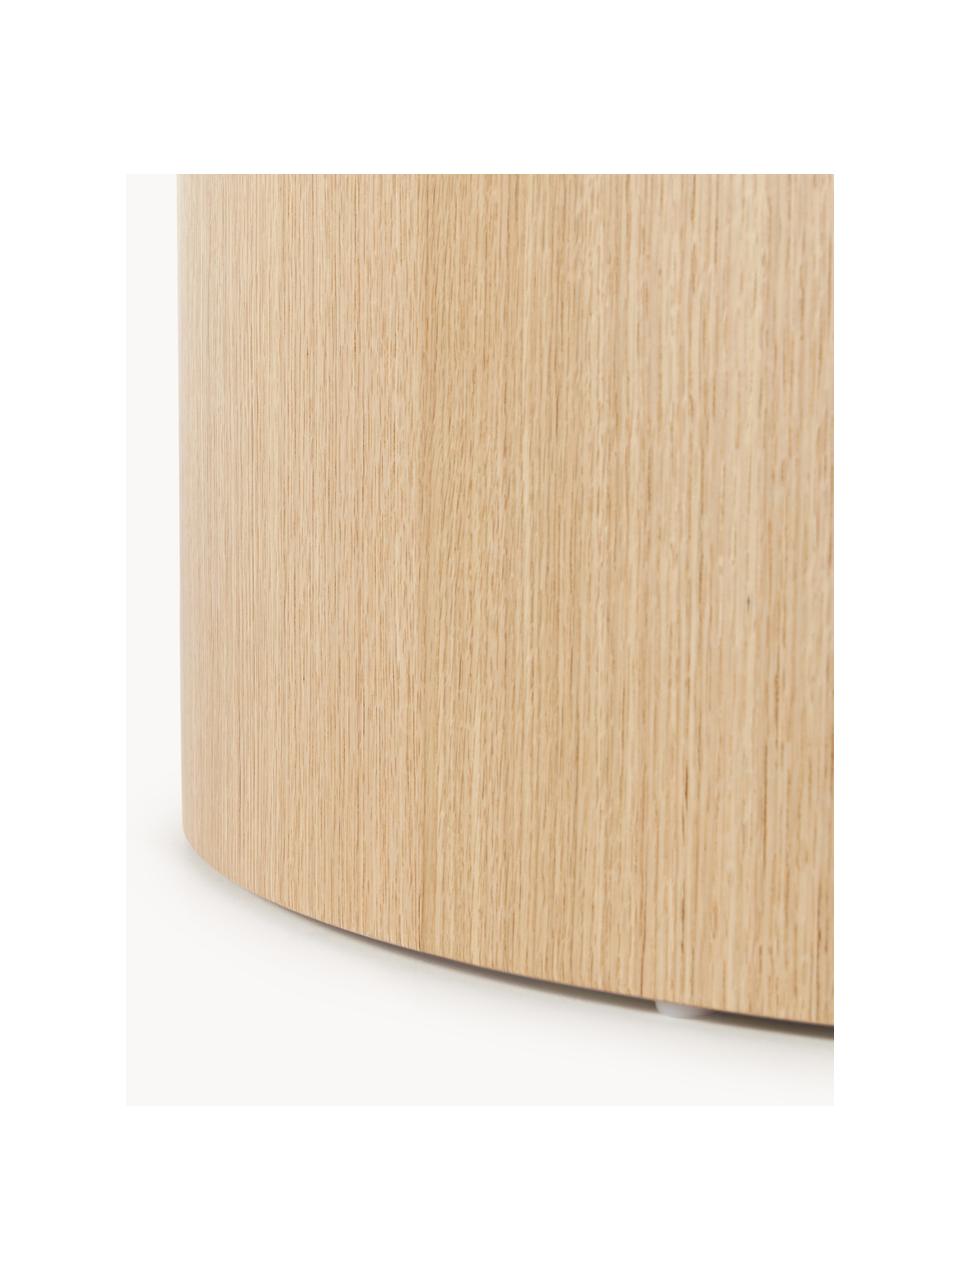 Runder Holz-Couchtisch Dan, Mitteldichte Holzfaserplatte (MDF) mit Eichenholzfurnier, Helles Holz, Ø 80 x H 30 cm